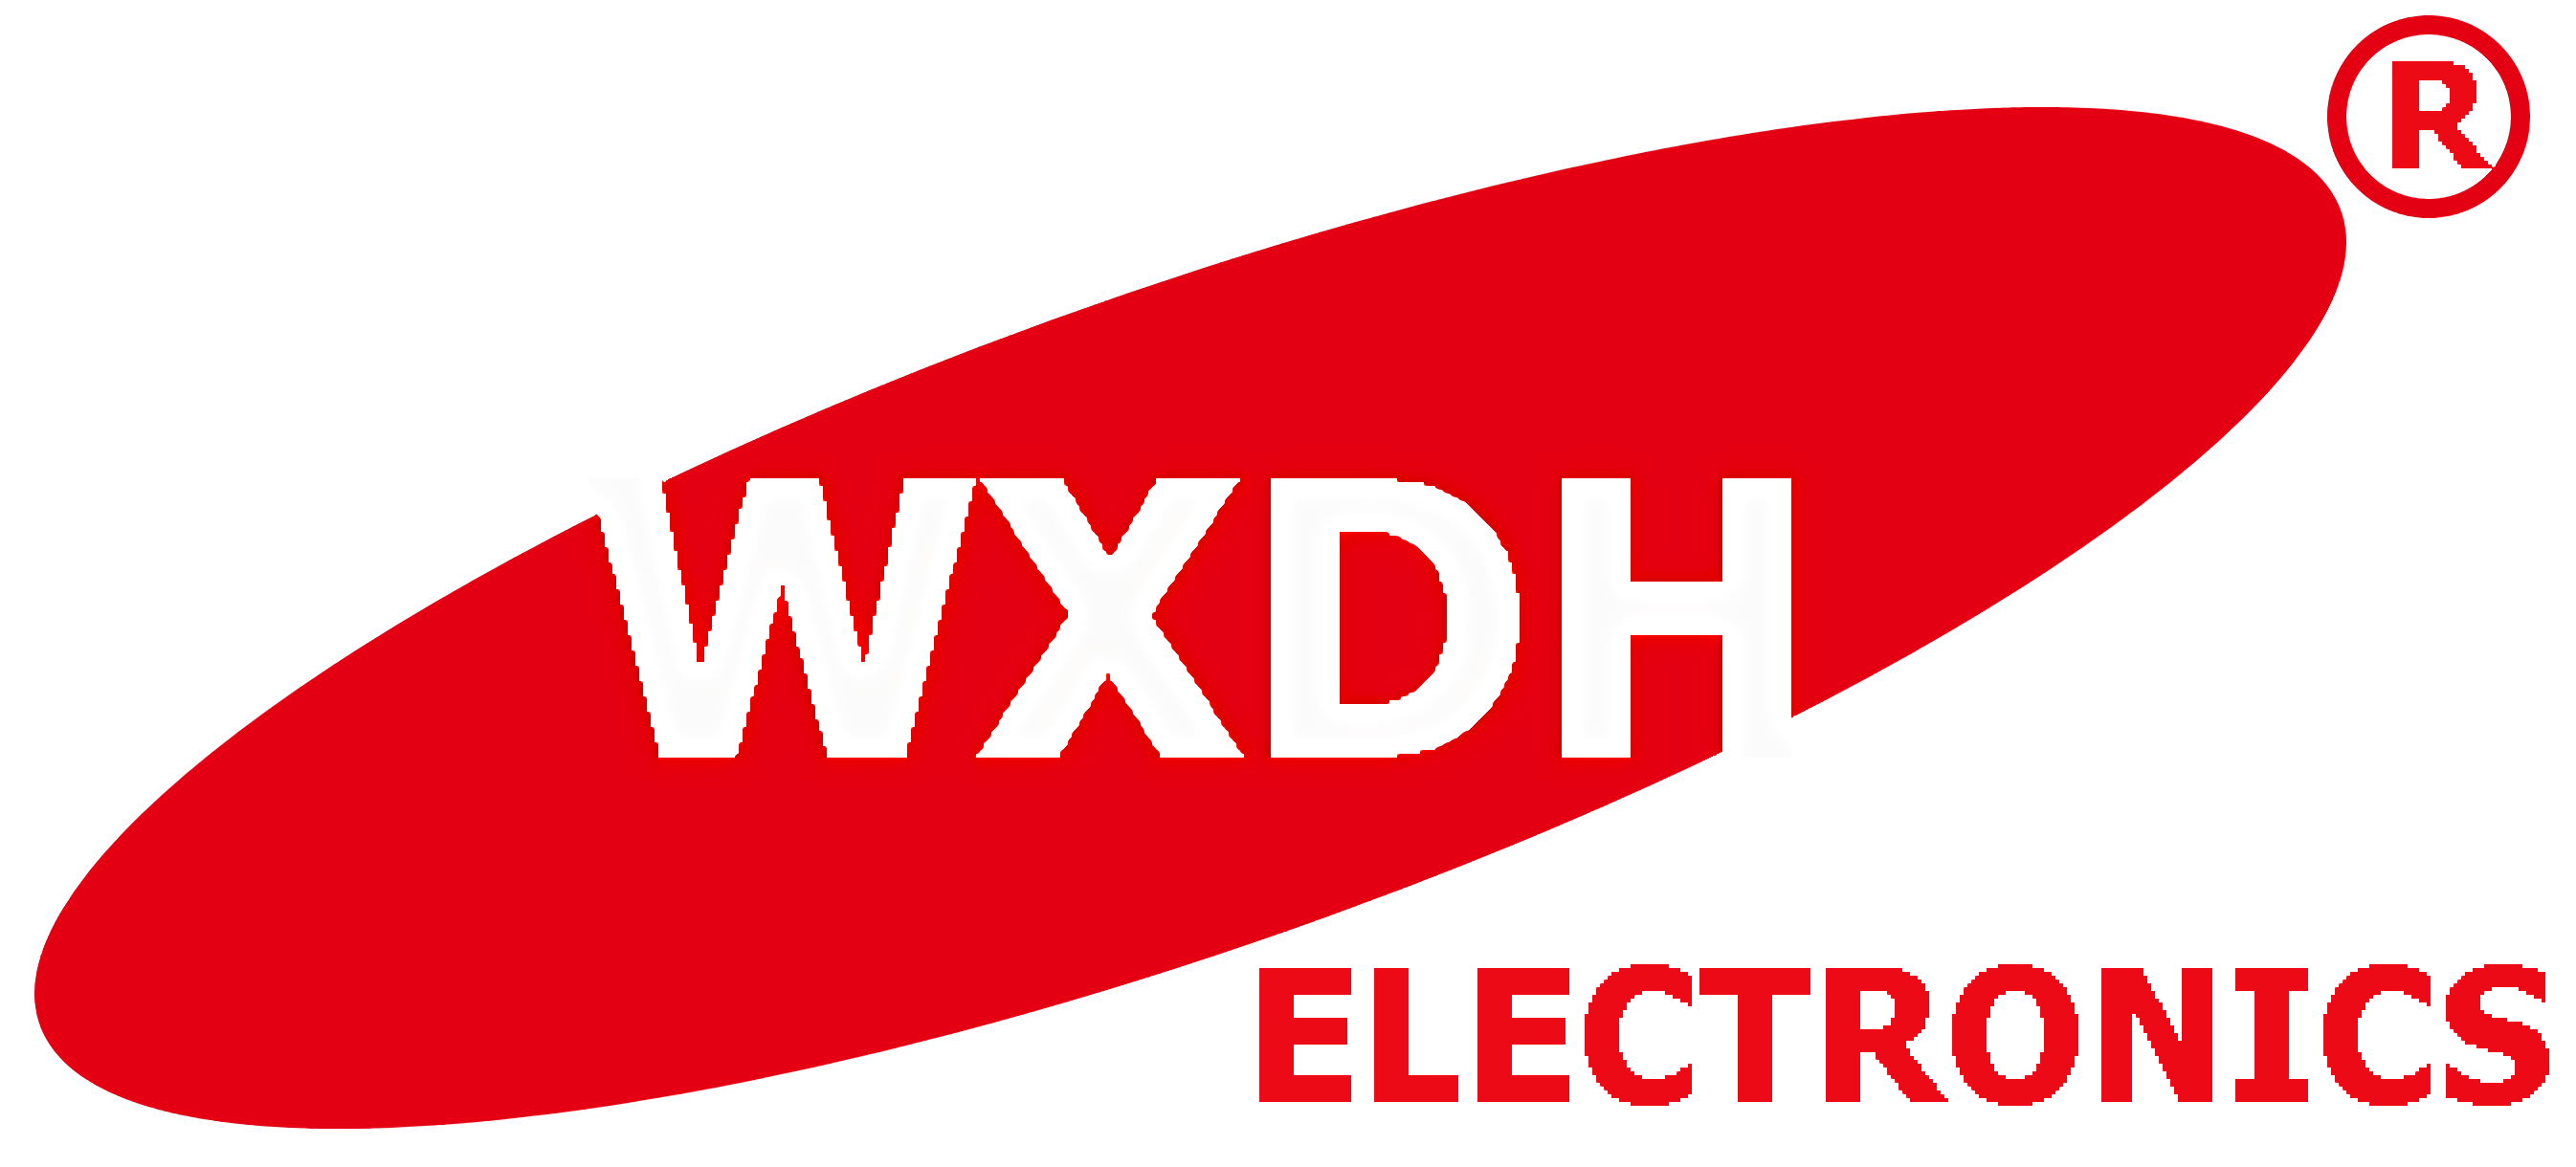 logotip wxdh